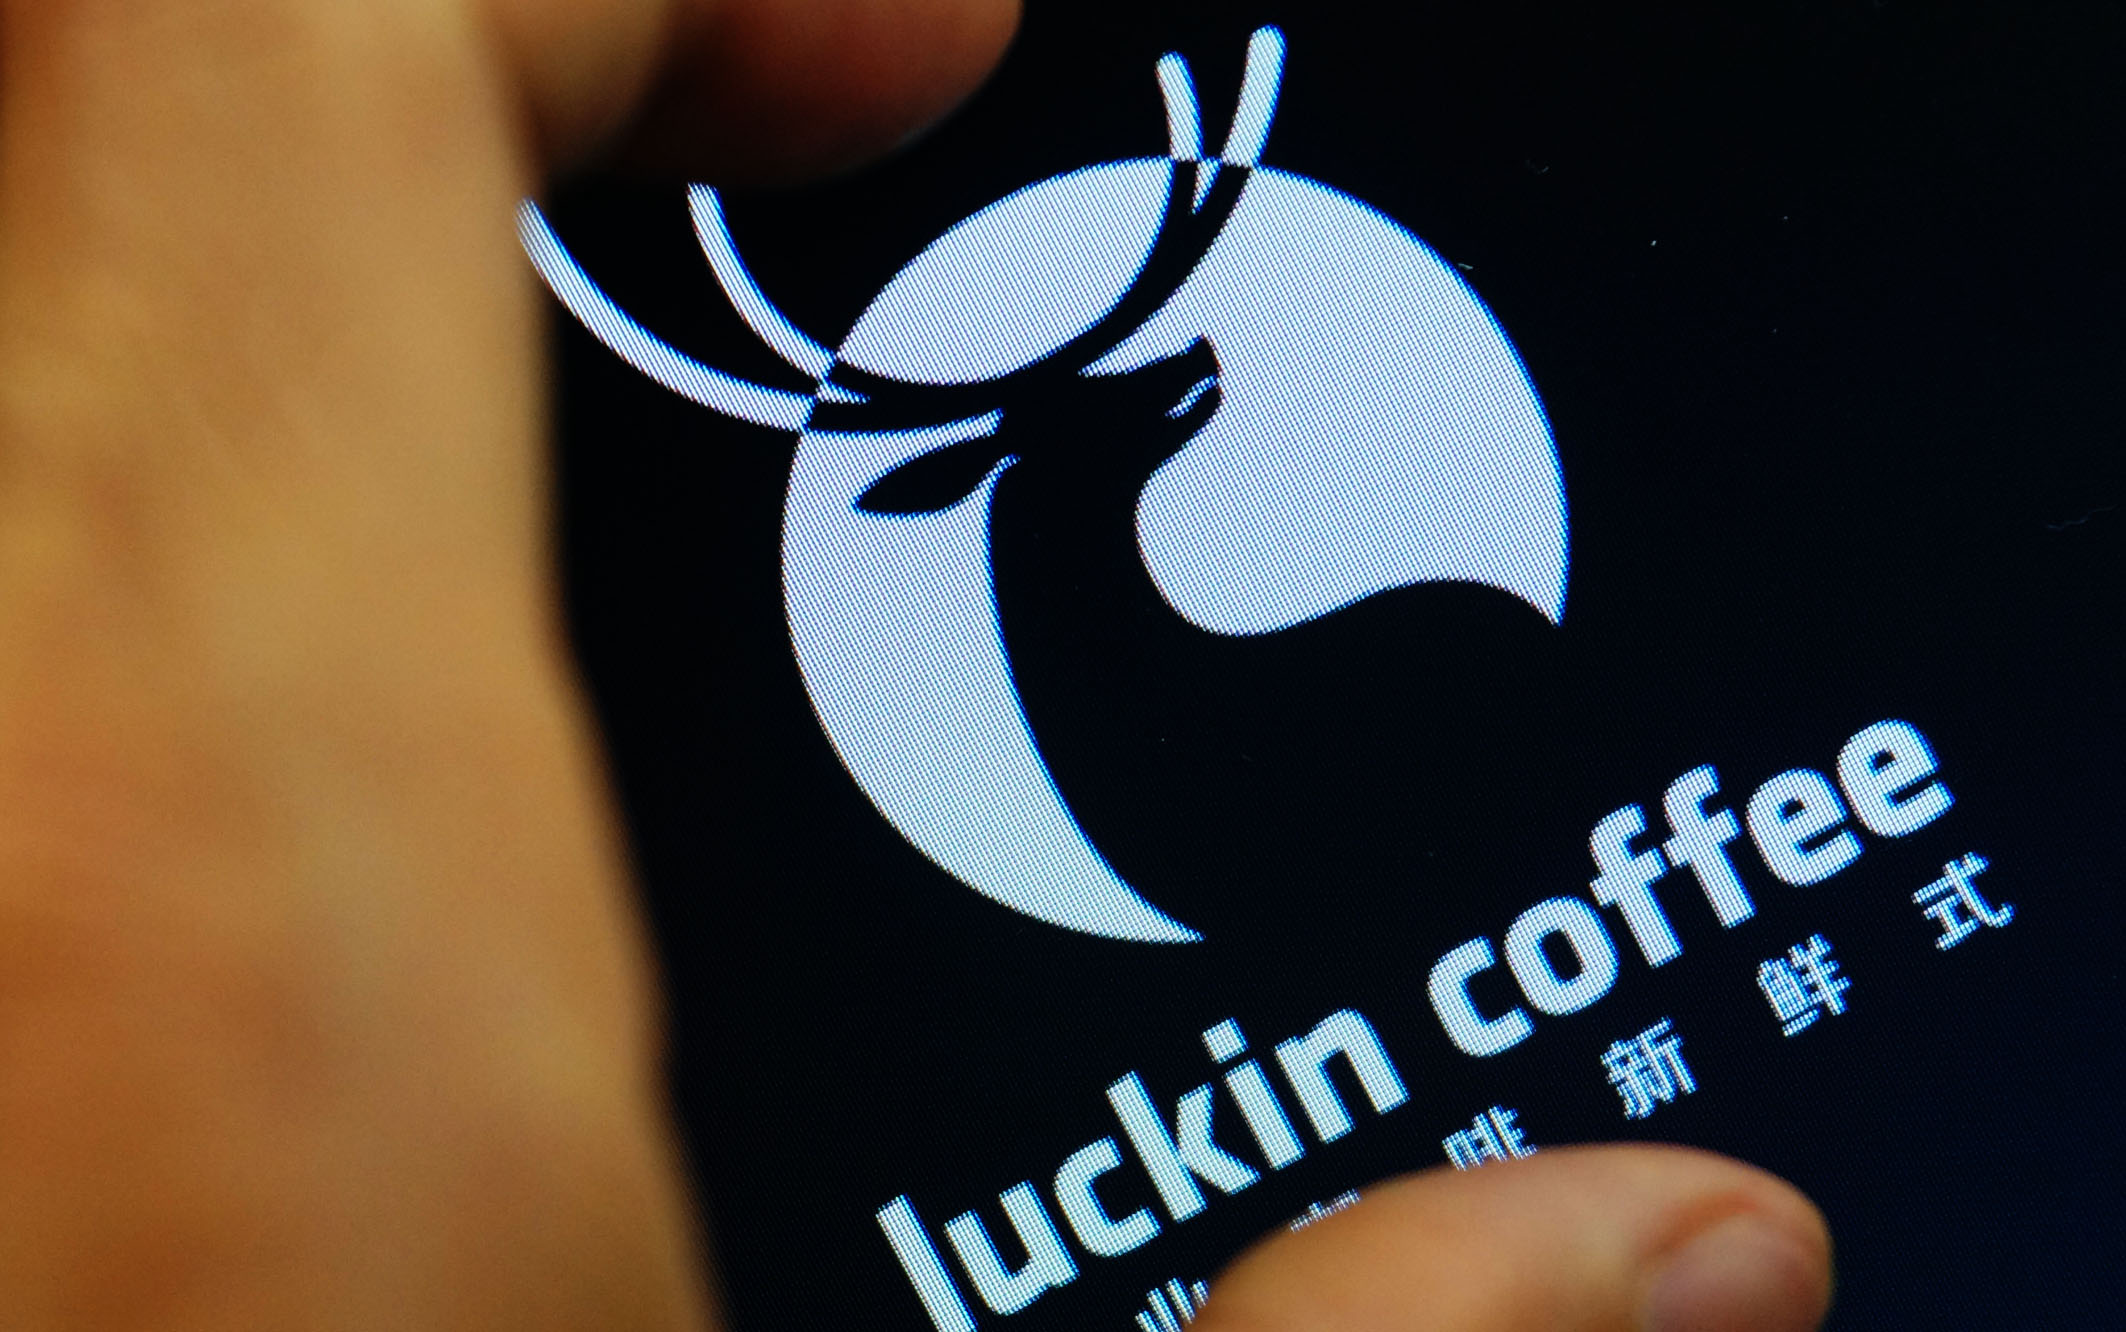 Tavaly ősszel alapították, már egymilliárd dollárt ér a Starbucks kínai riválisa